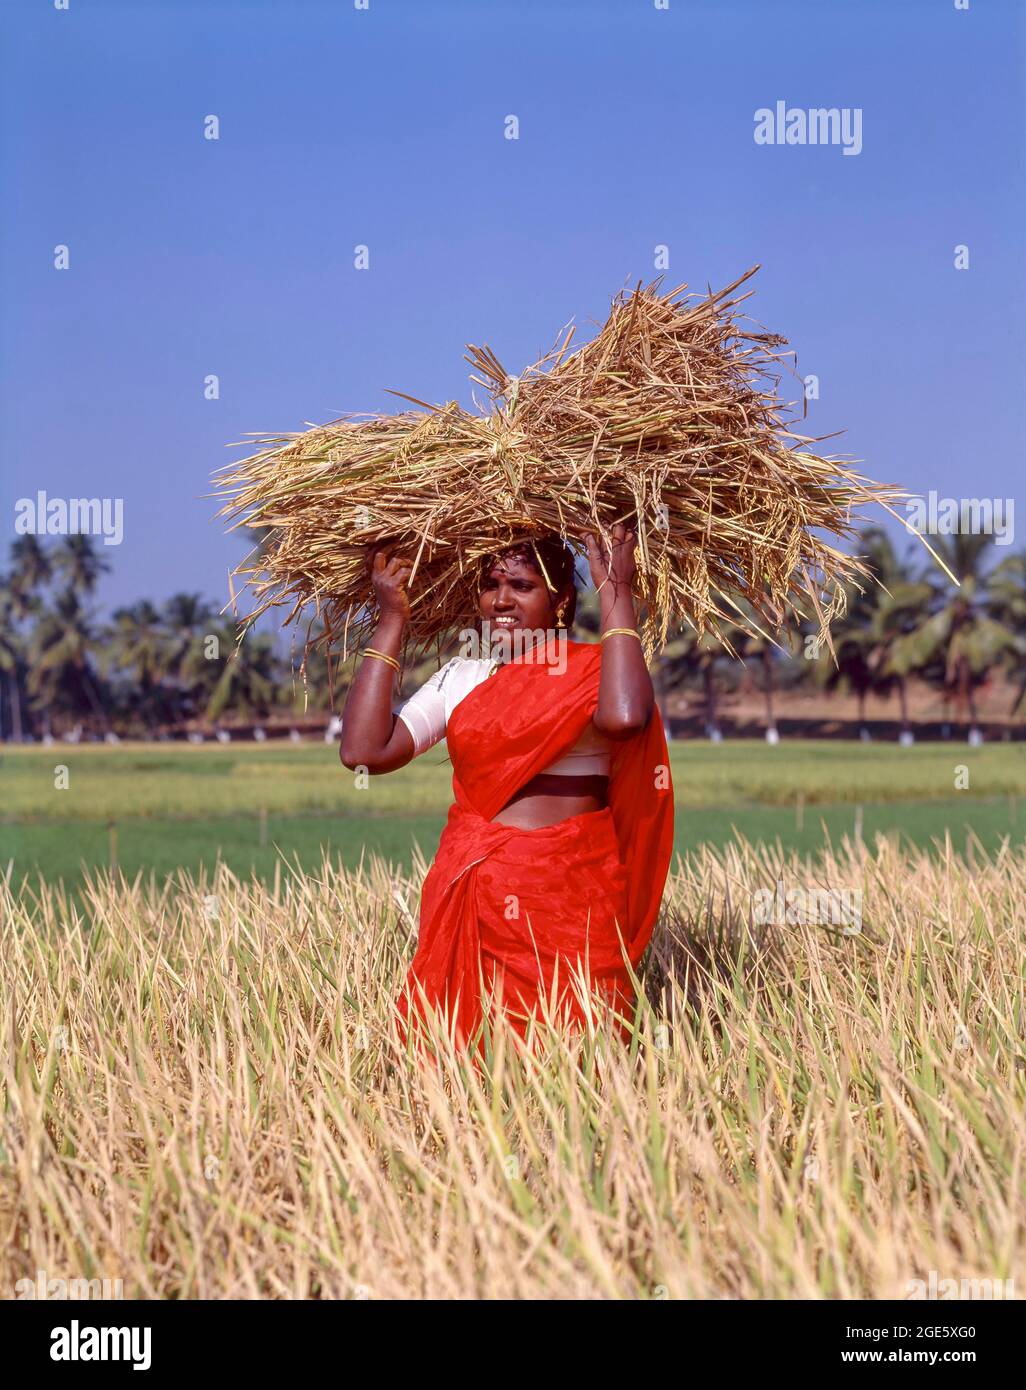 Femme tenant un tas de gerbes avec du riz sur la tête et debout dans un champ de riz, Coimbatore, Tamil Nadu, Inde Banque D'Images